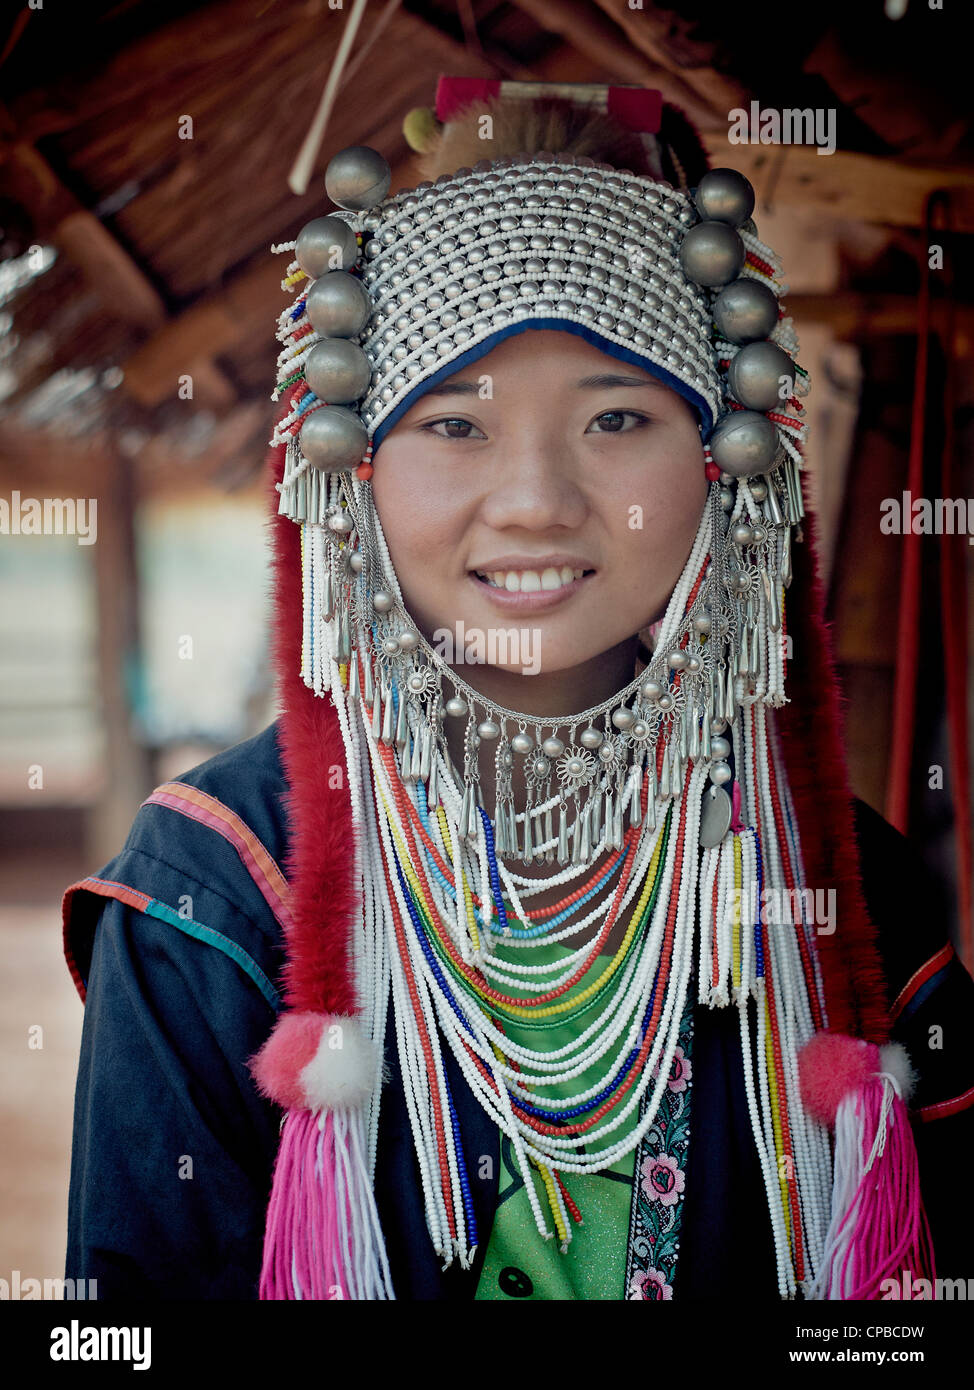 Akha Hill Tribe Mädchen von Nord-thailand. Chiang Mai Provinz. Südostasien. Ländliche Thailand Menschen S.E. Asien. Schöne Thai Mädchen. Bergstämme Stockfoto